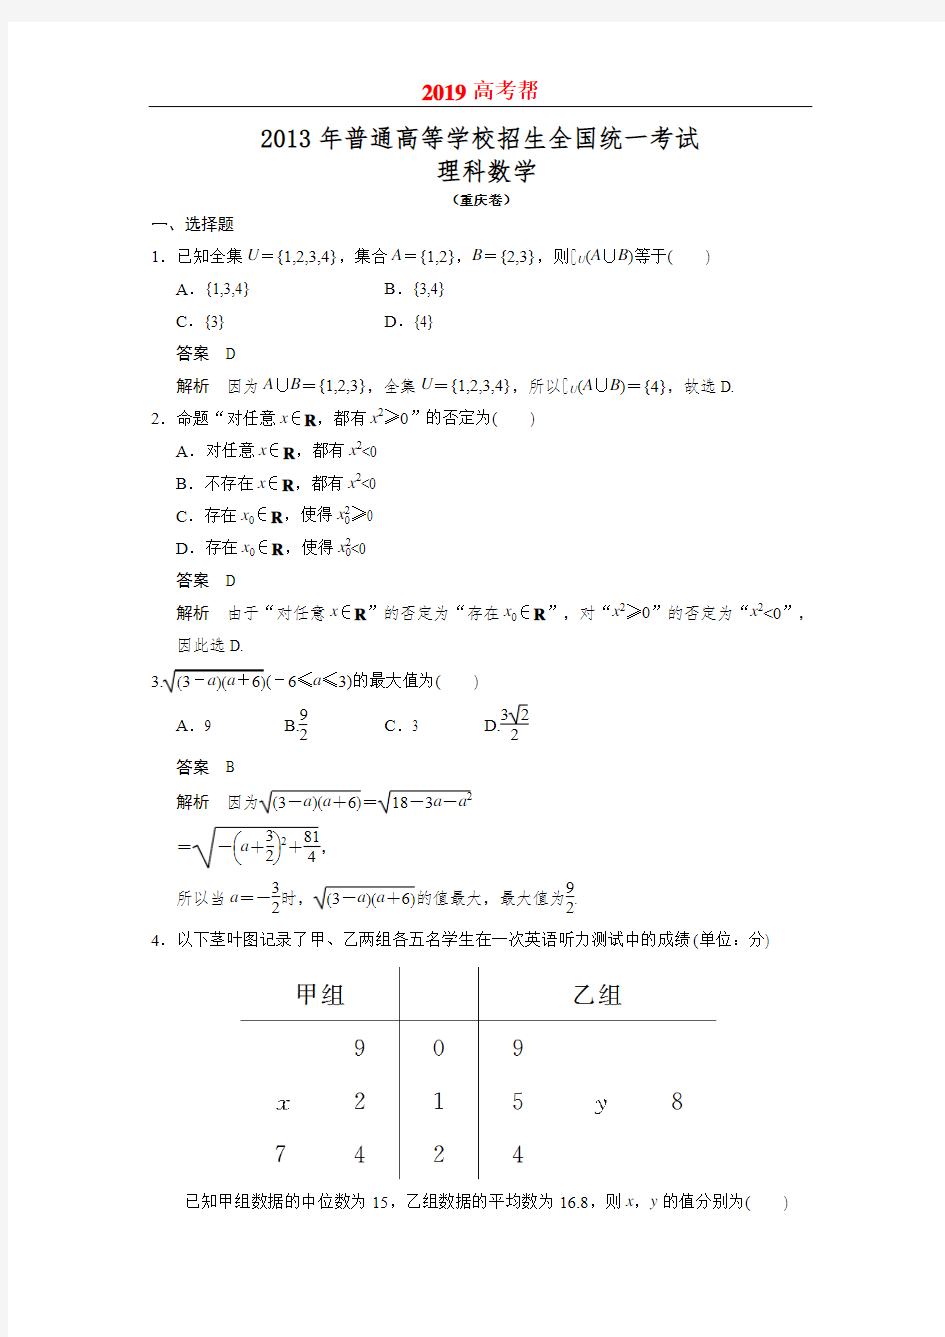 2013年高考重庆卷理科数学试题及答案